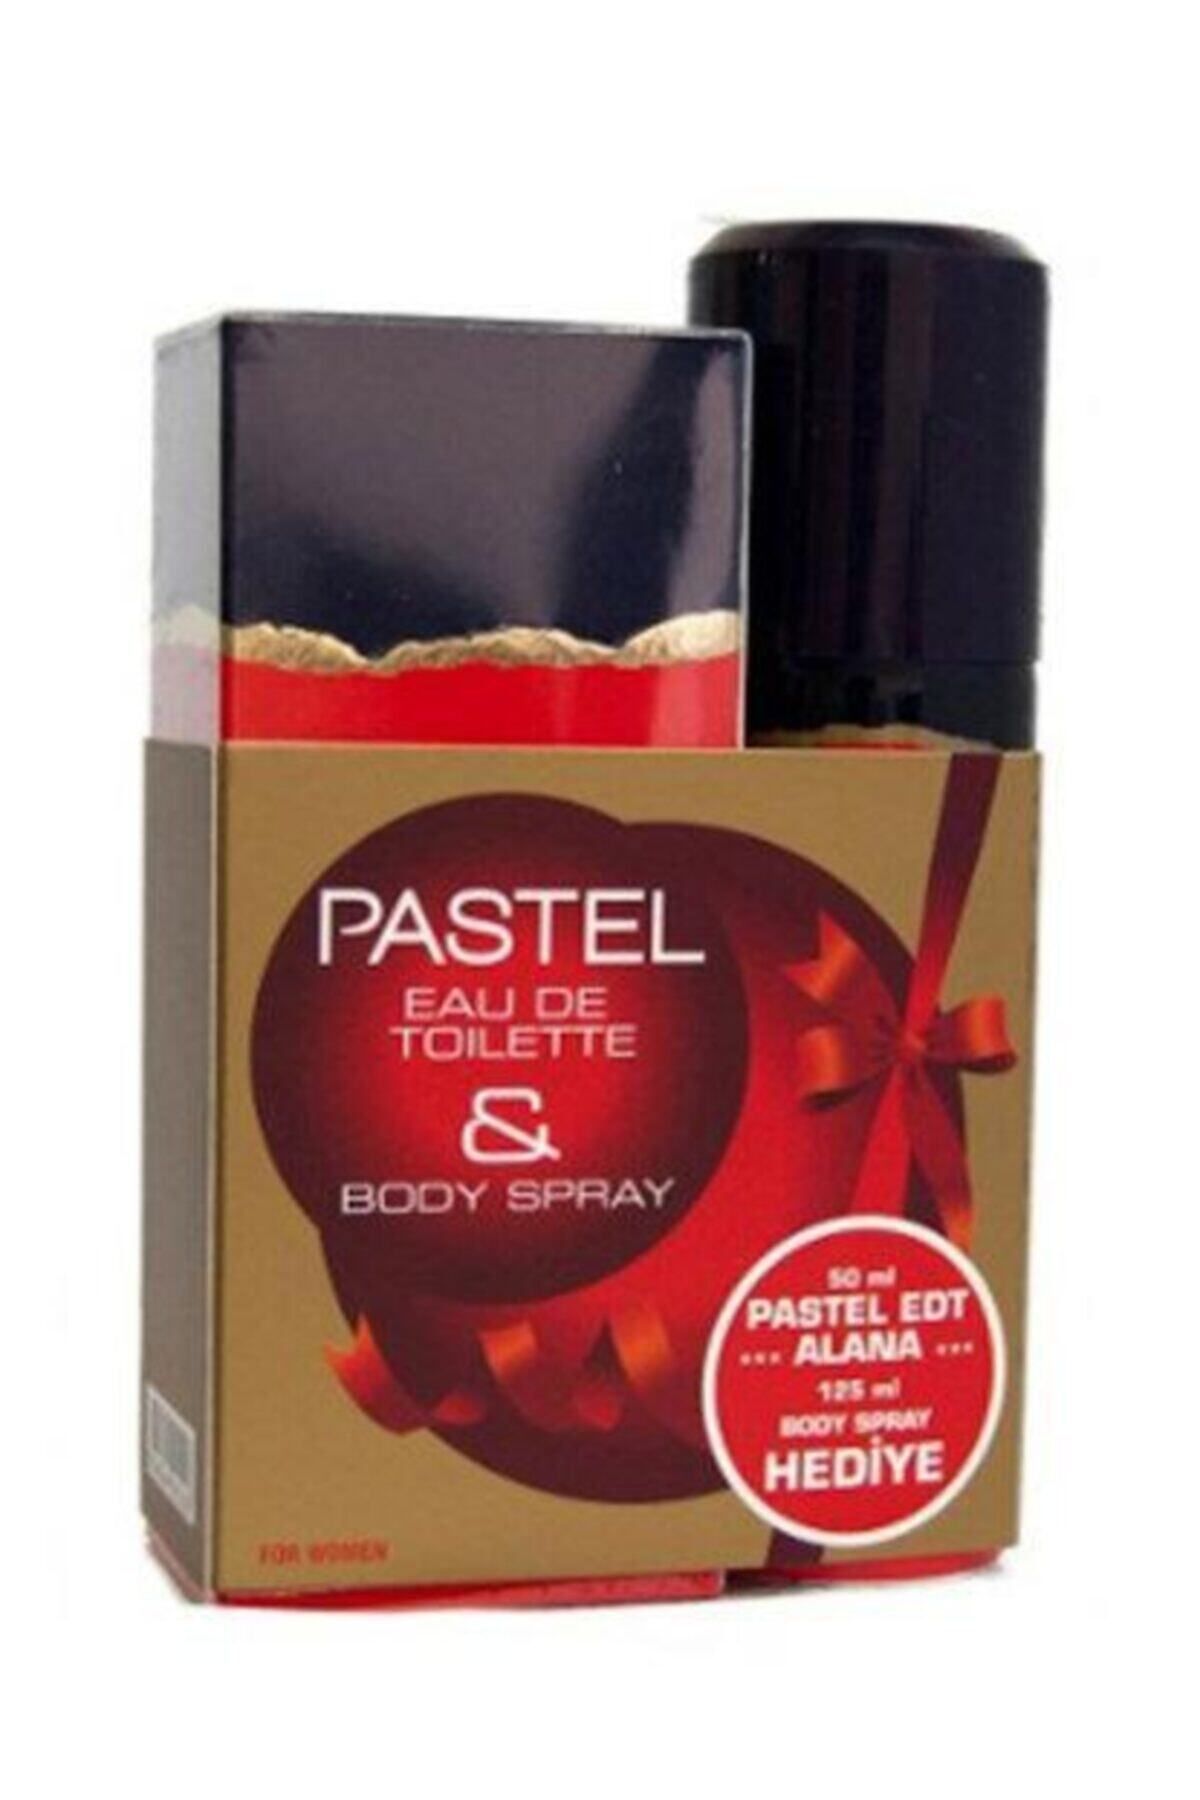 Pastel Kofre Kadın Parfüm Kofre Edt 50 ml 125 ml Deodorant Kadın